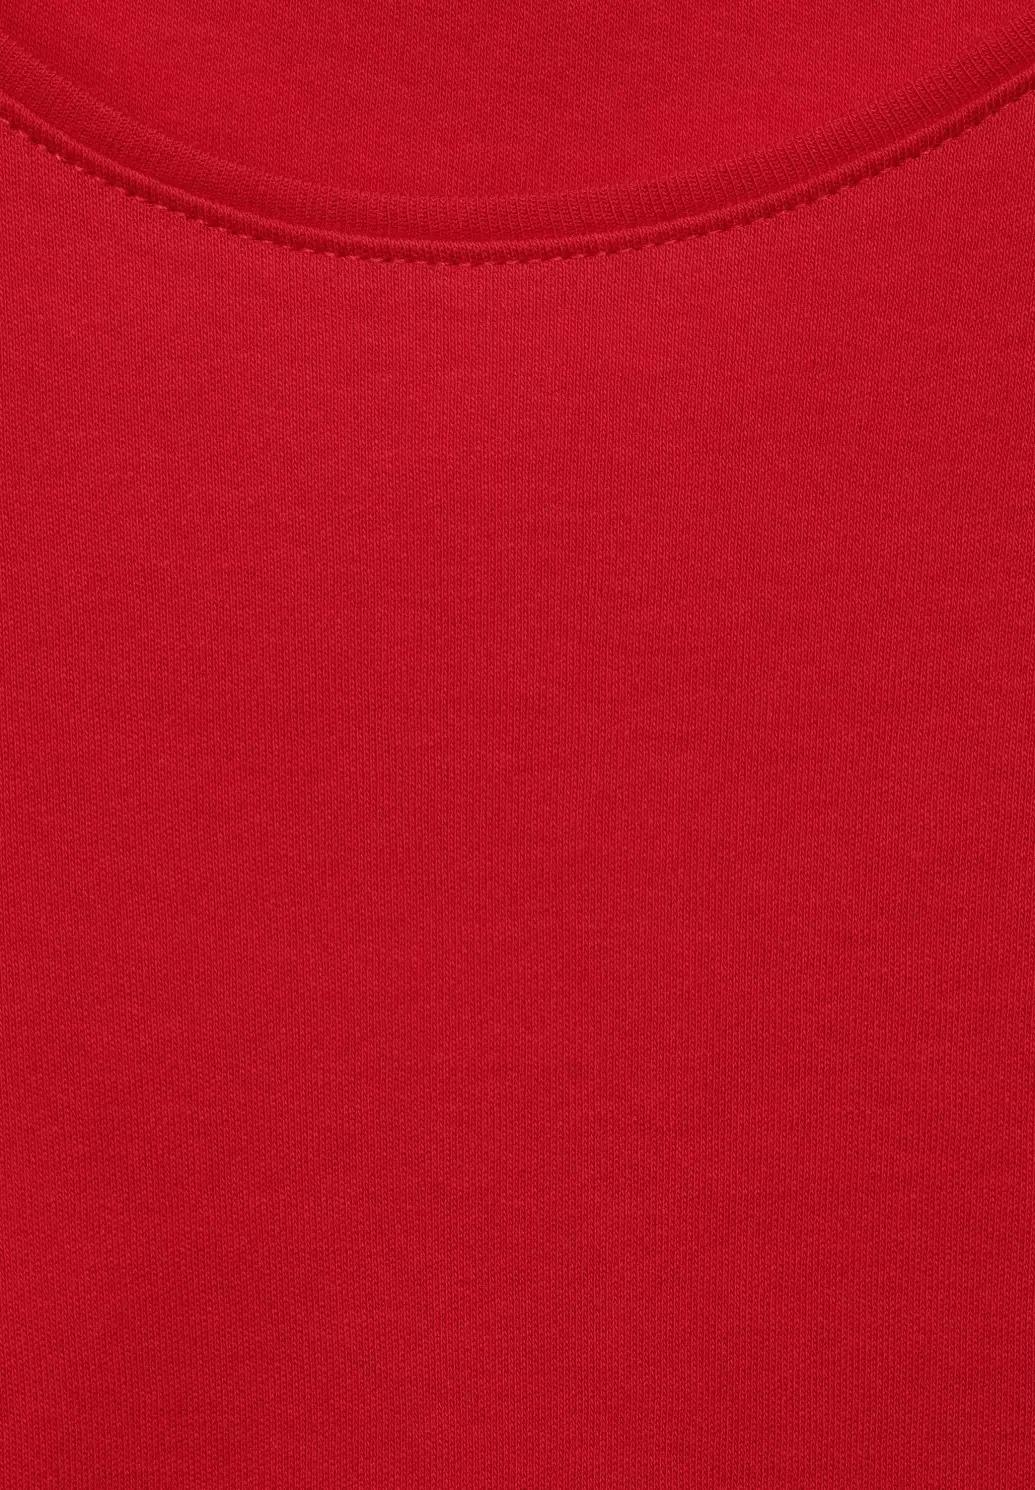 CECIL jednofarebné tričko, štýl LENA, červená